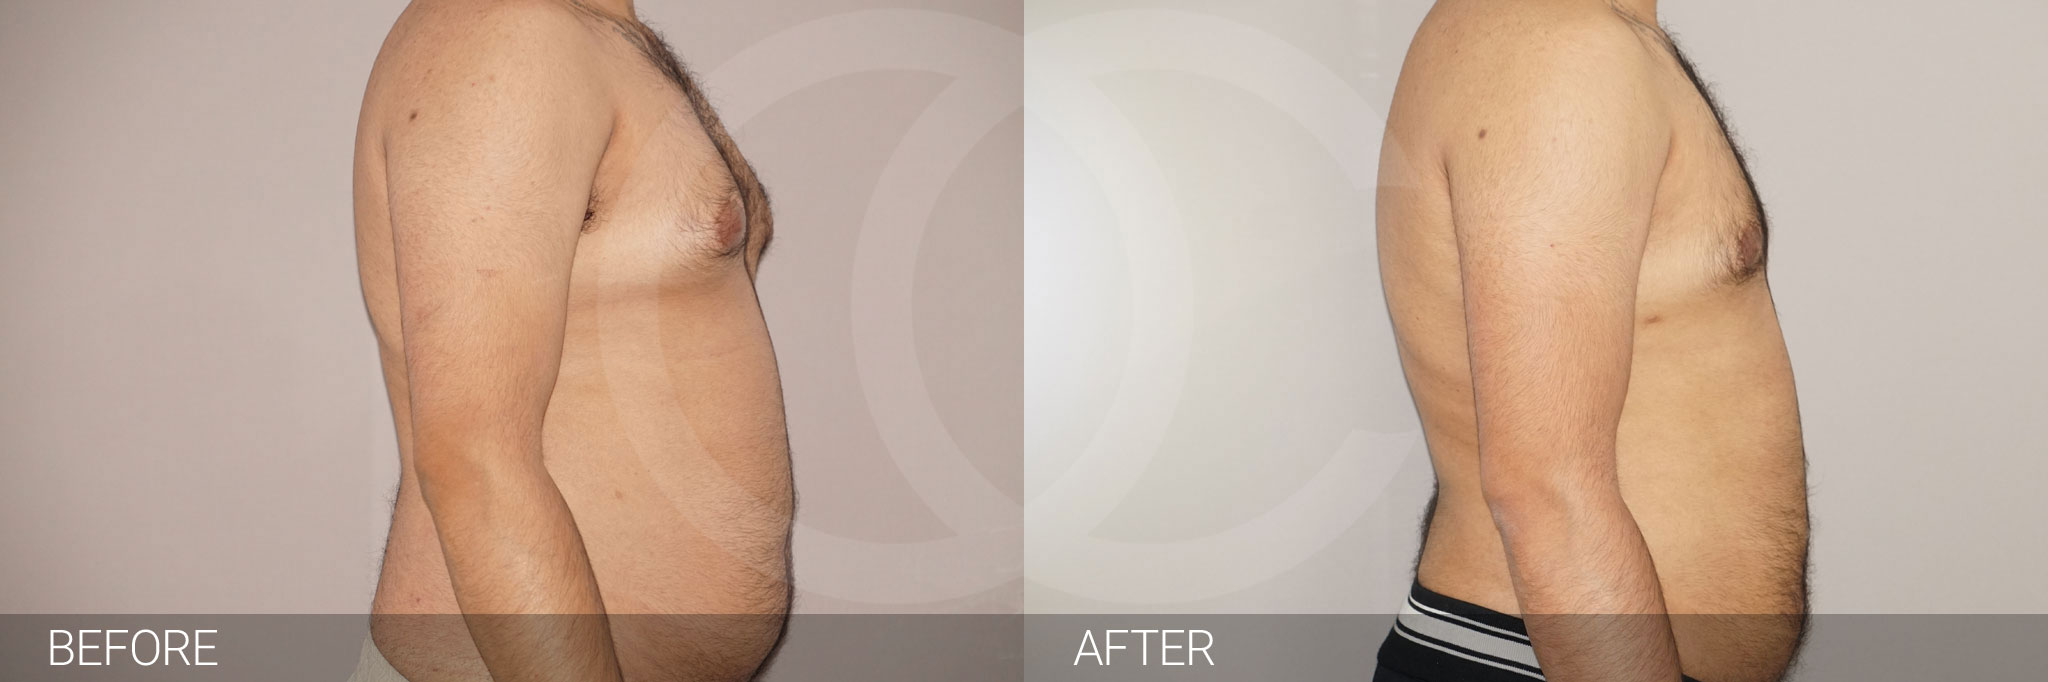 Antes y después Liposucción para hombres fotos reales de pacientes 3.2 | Ocean Clinic Marbella Madrid